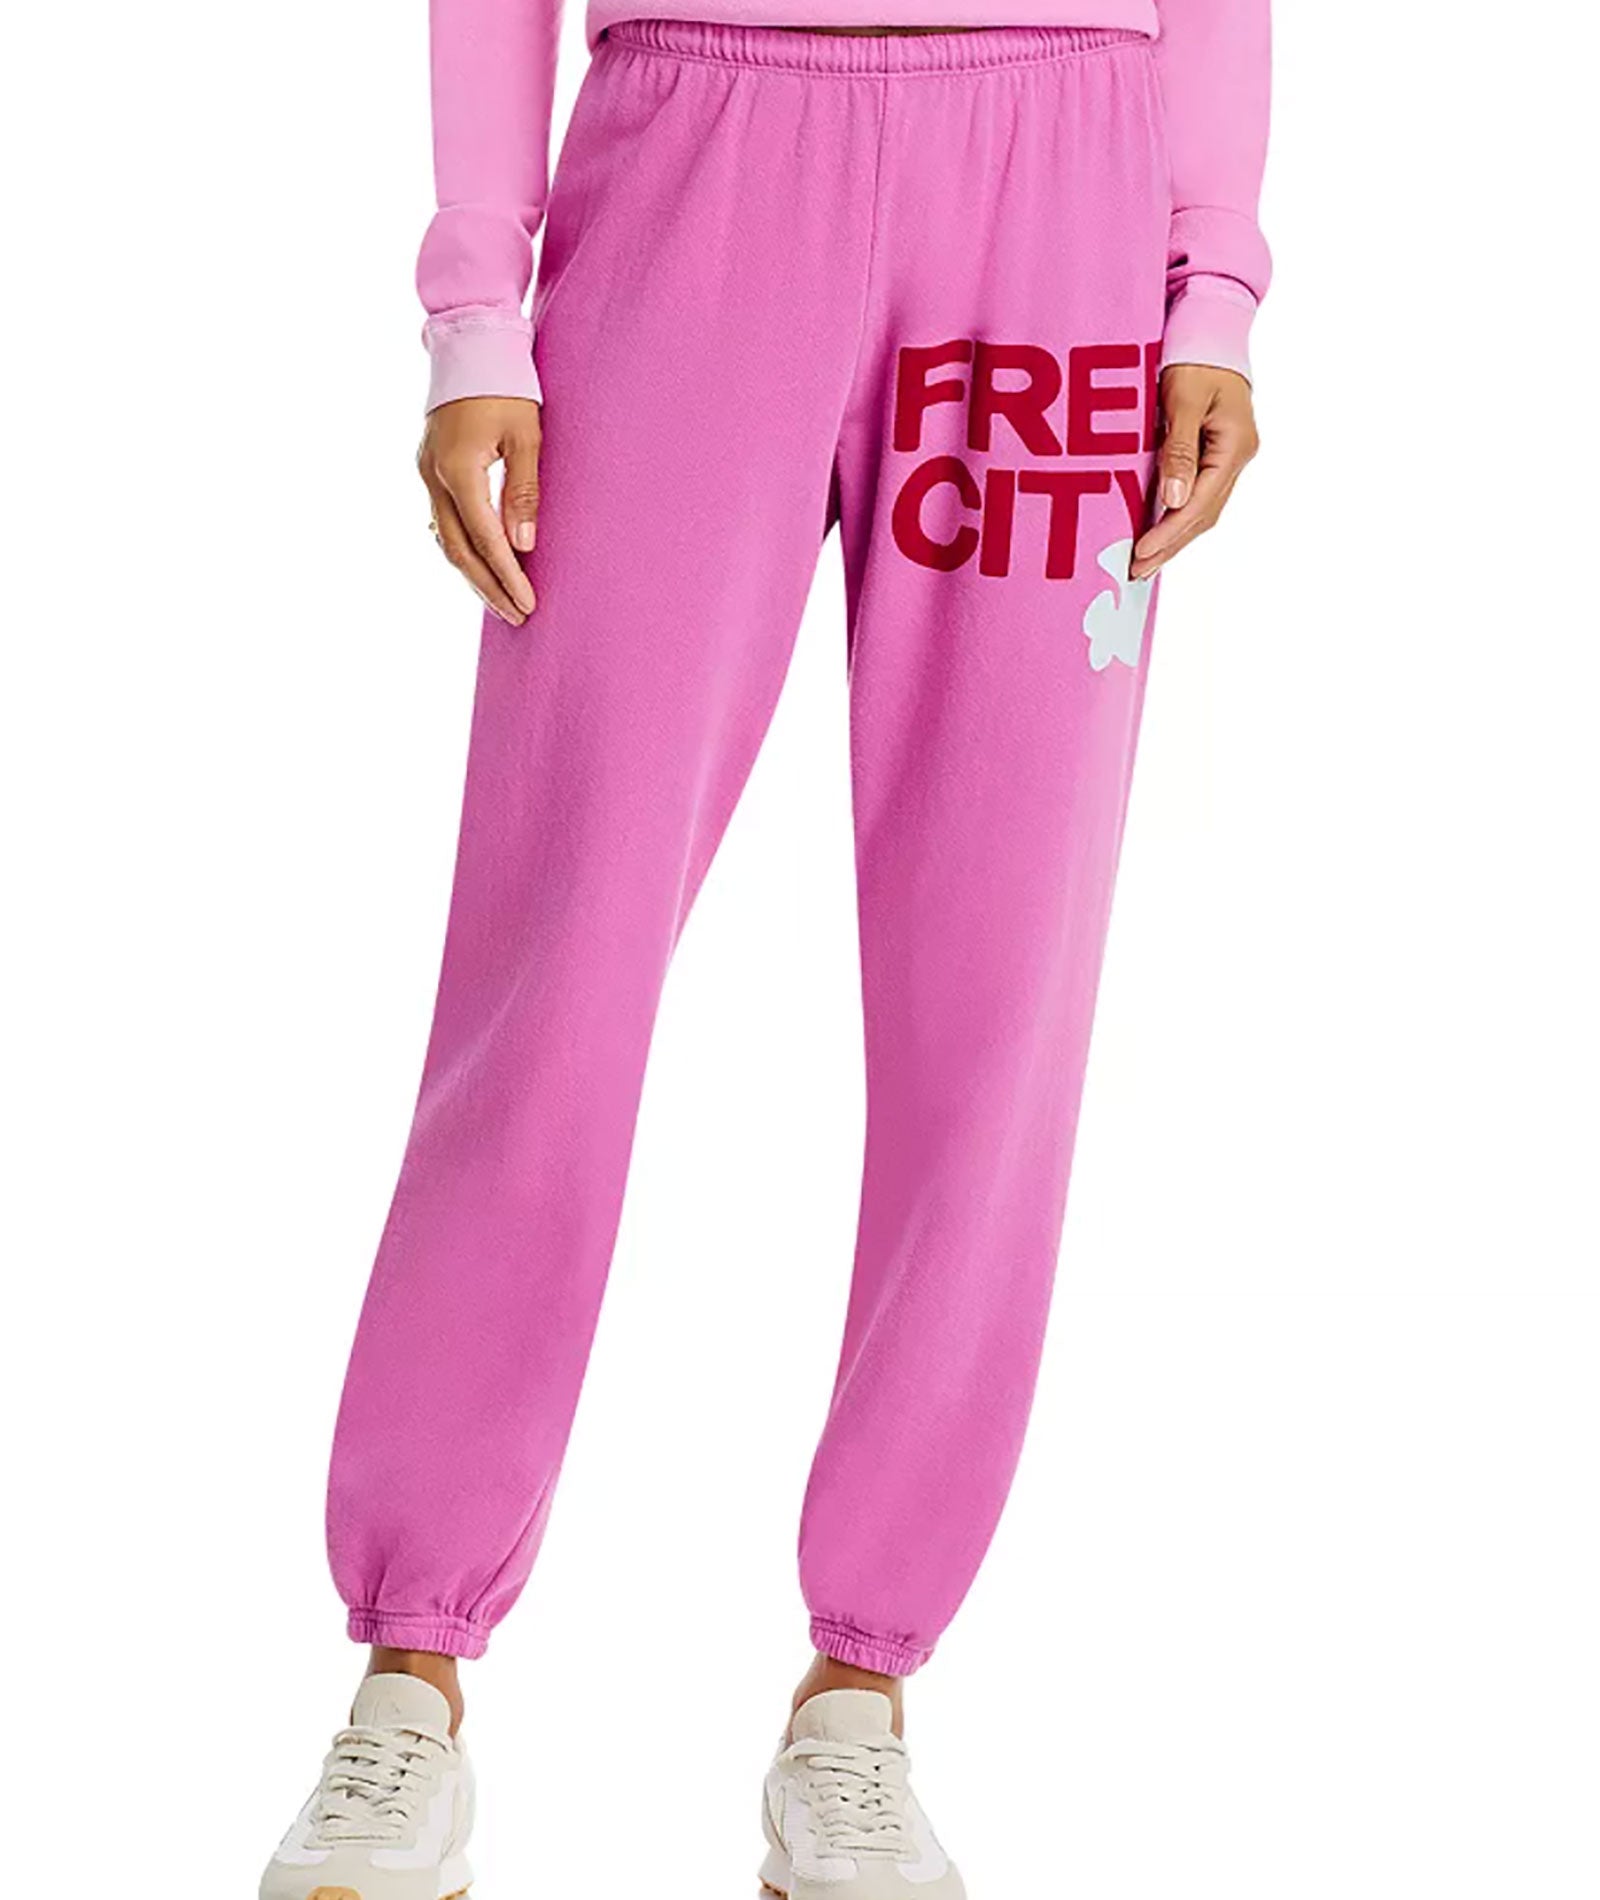 FREECITY Women Large Sweatpants Pink Lips Cherry